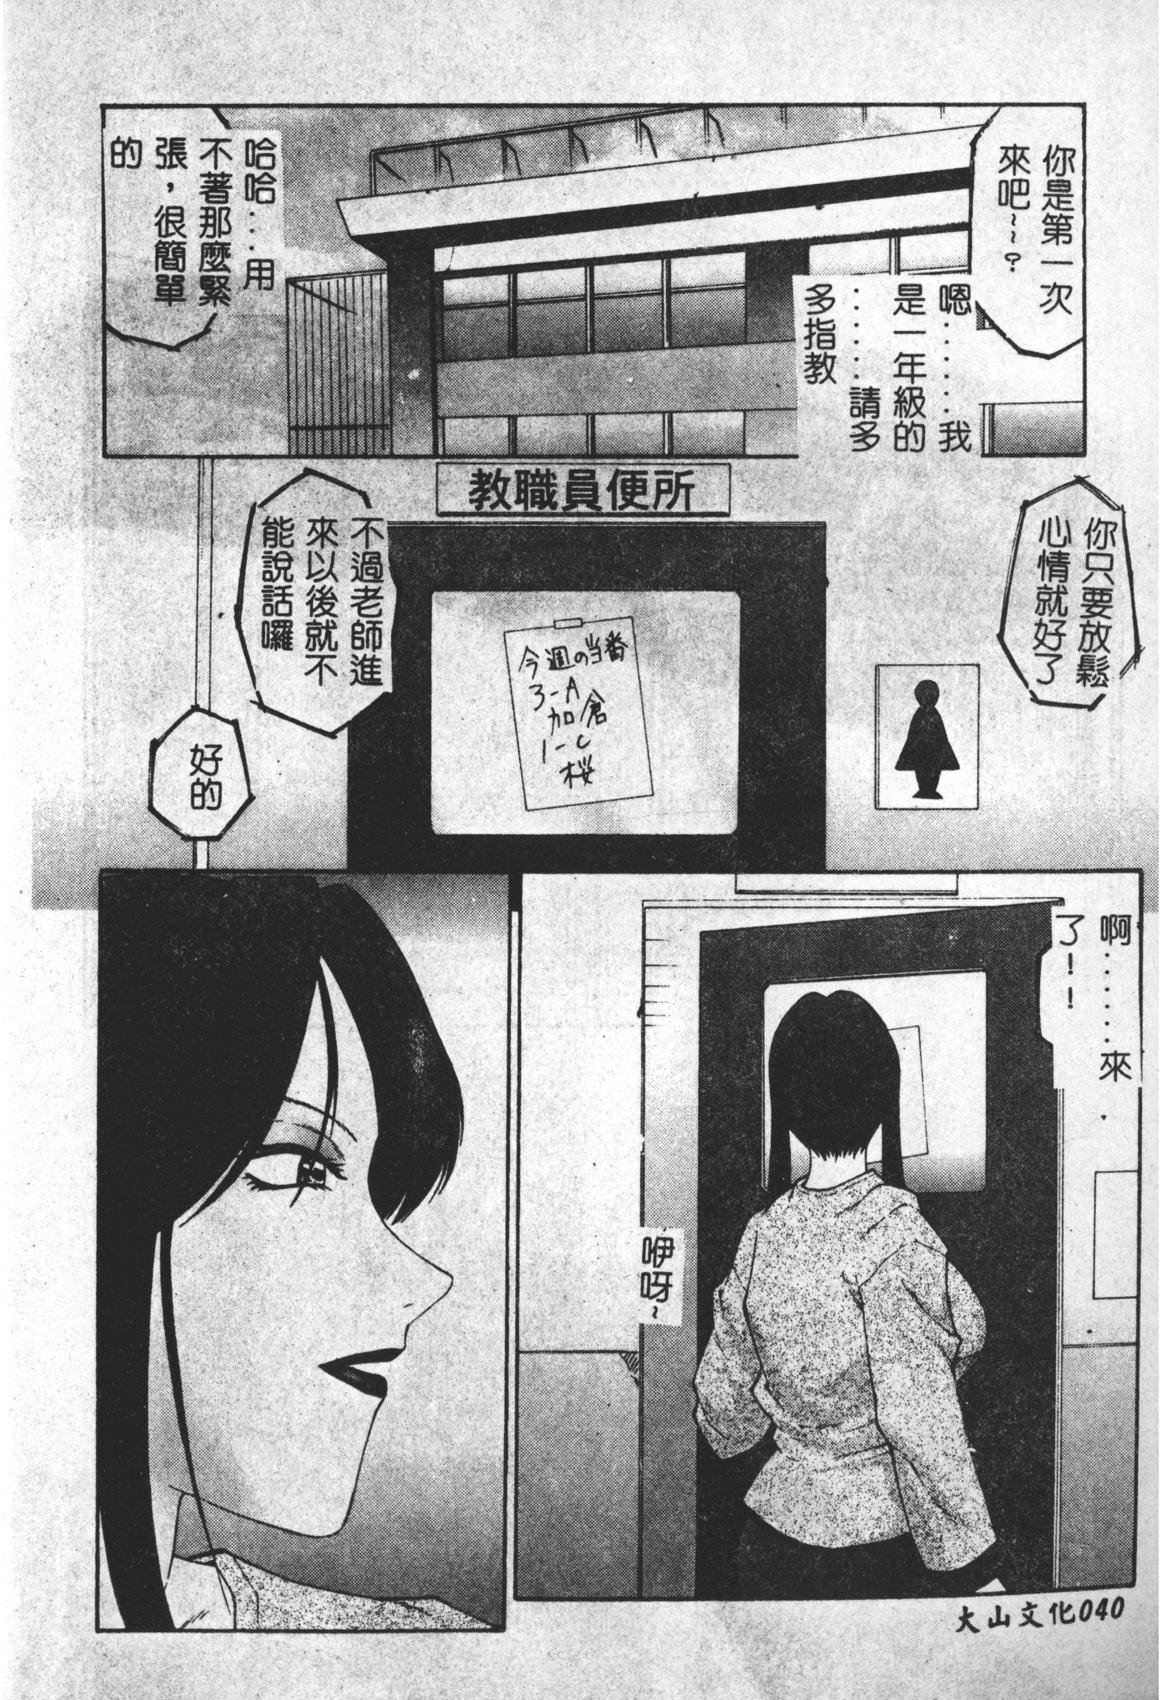 Keraku no Sho - The Book of Pleasure 40